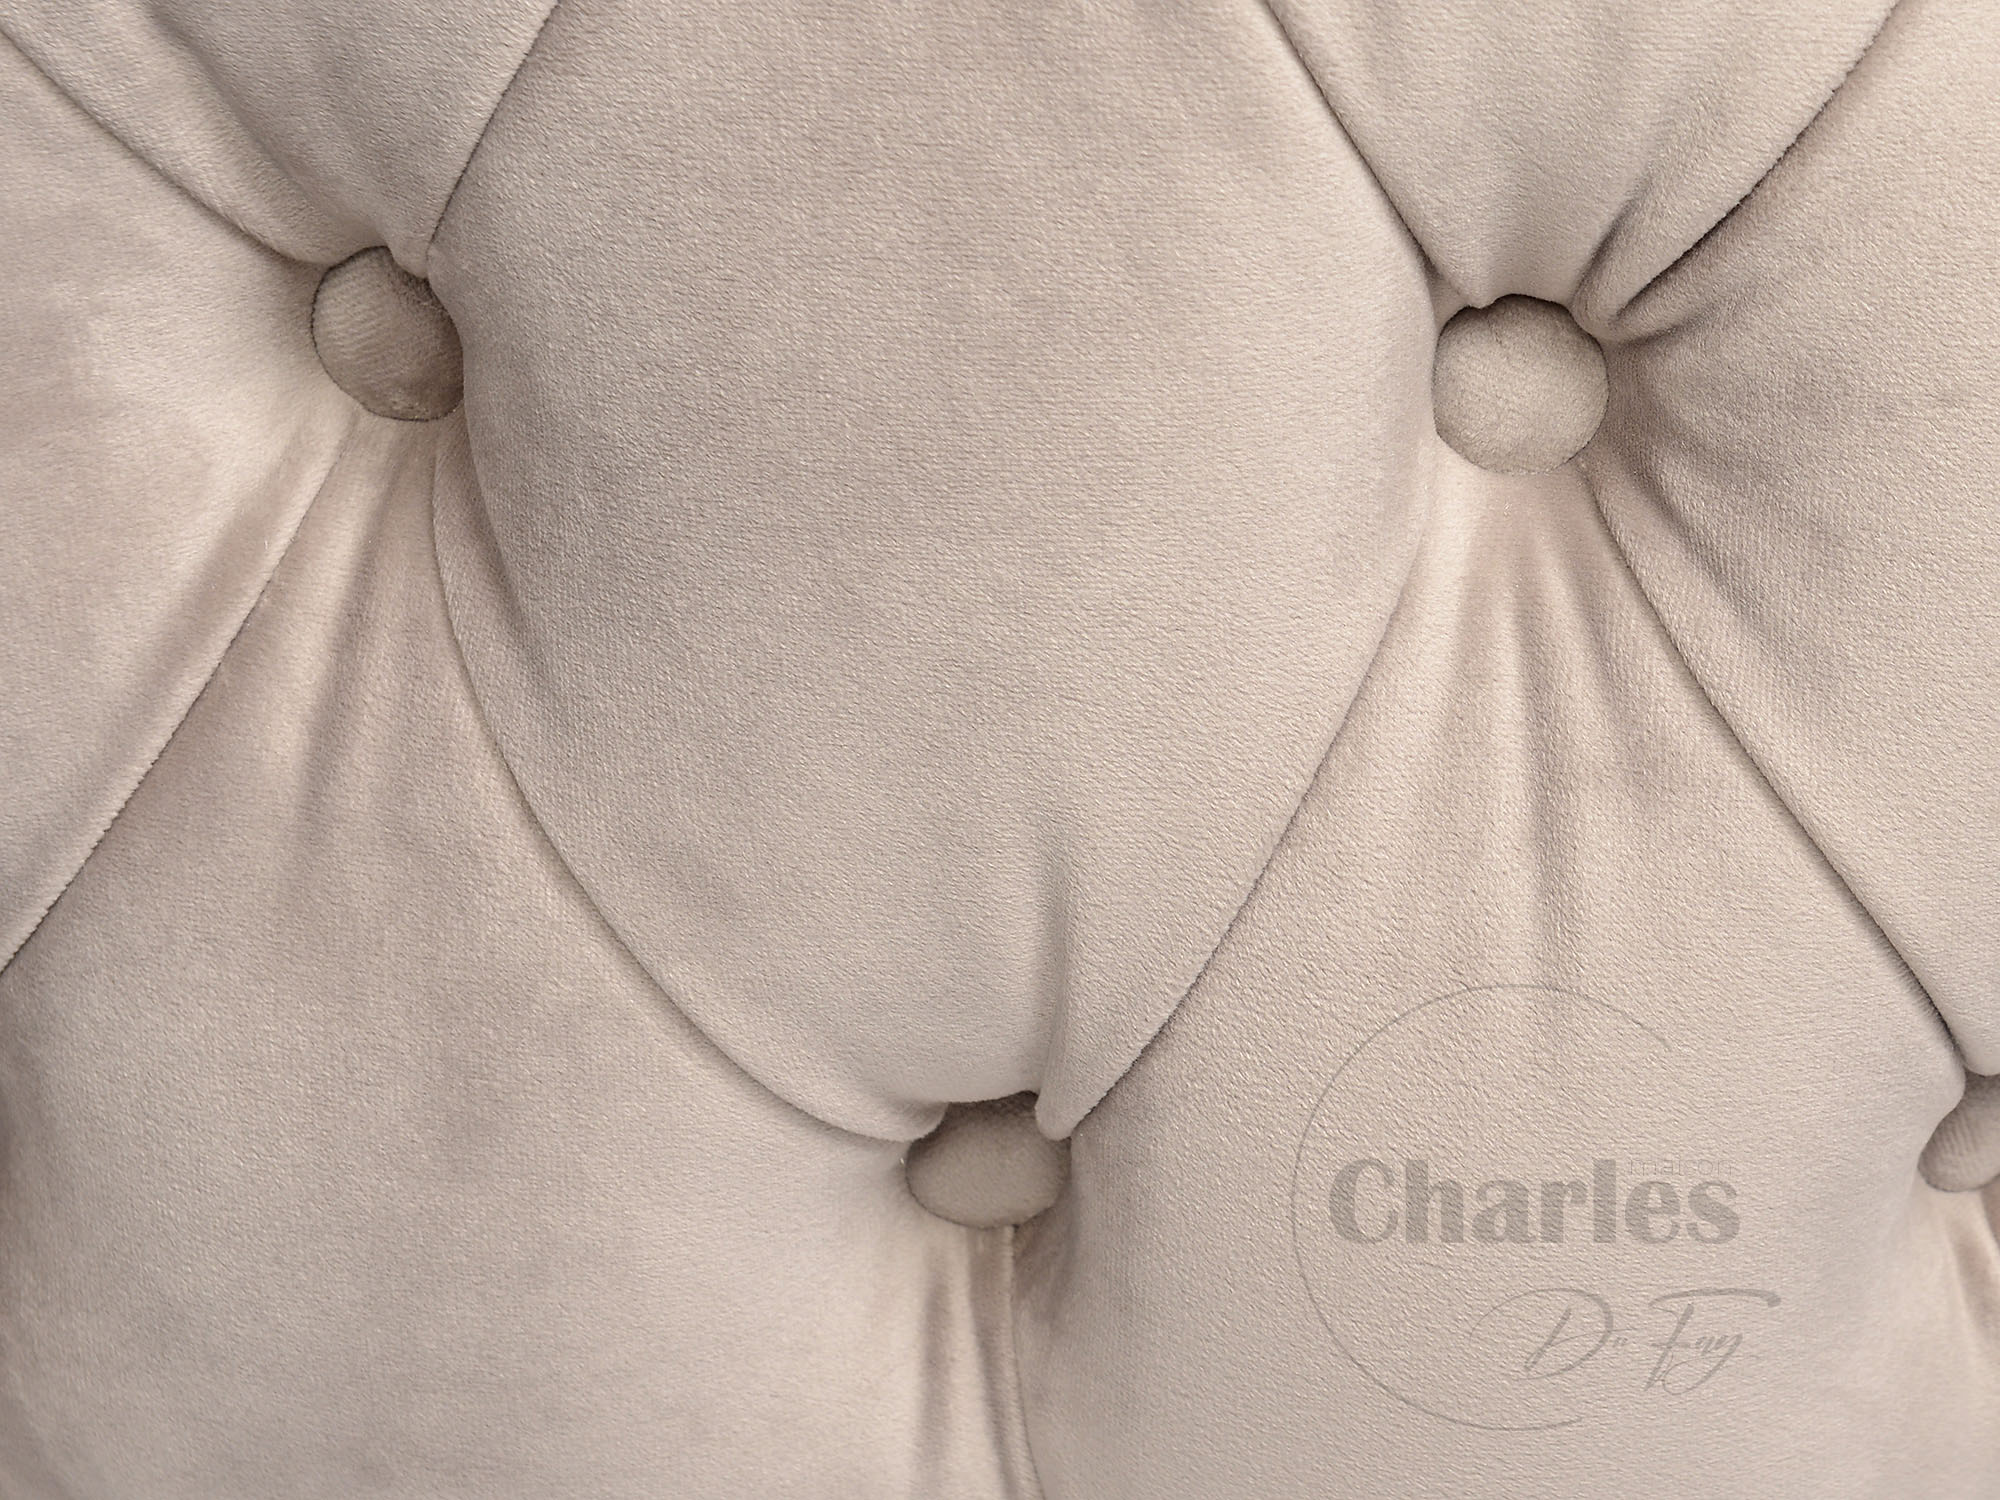 Luxe Baby Wieg - Khaki velvet - Charles Du Fay